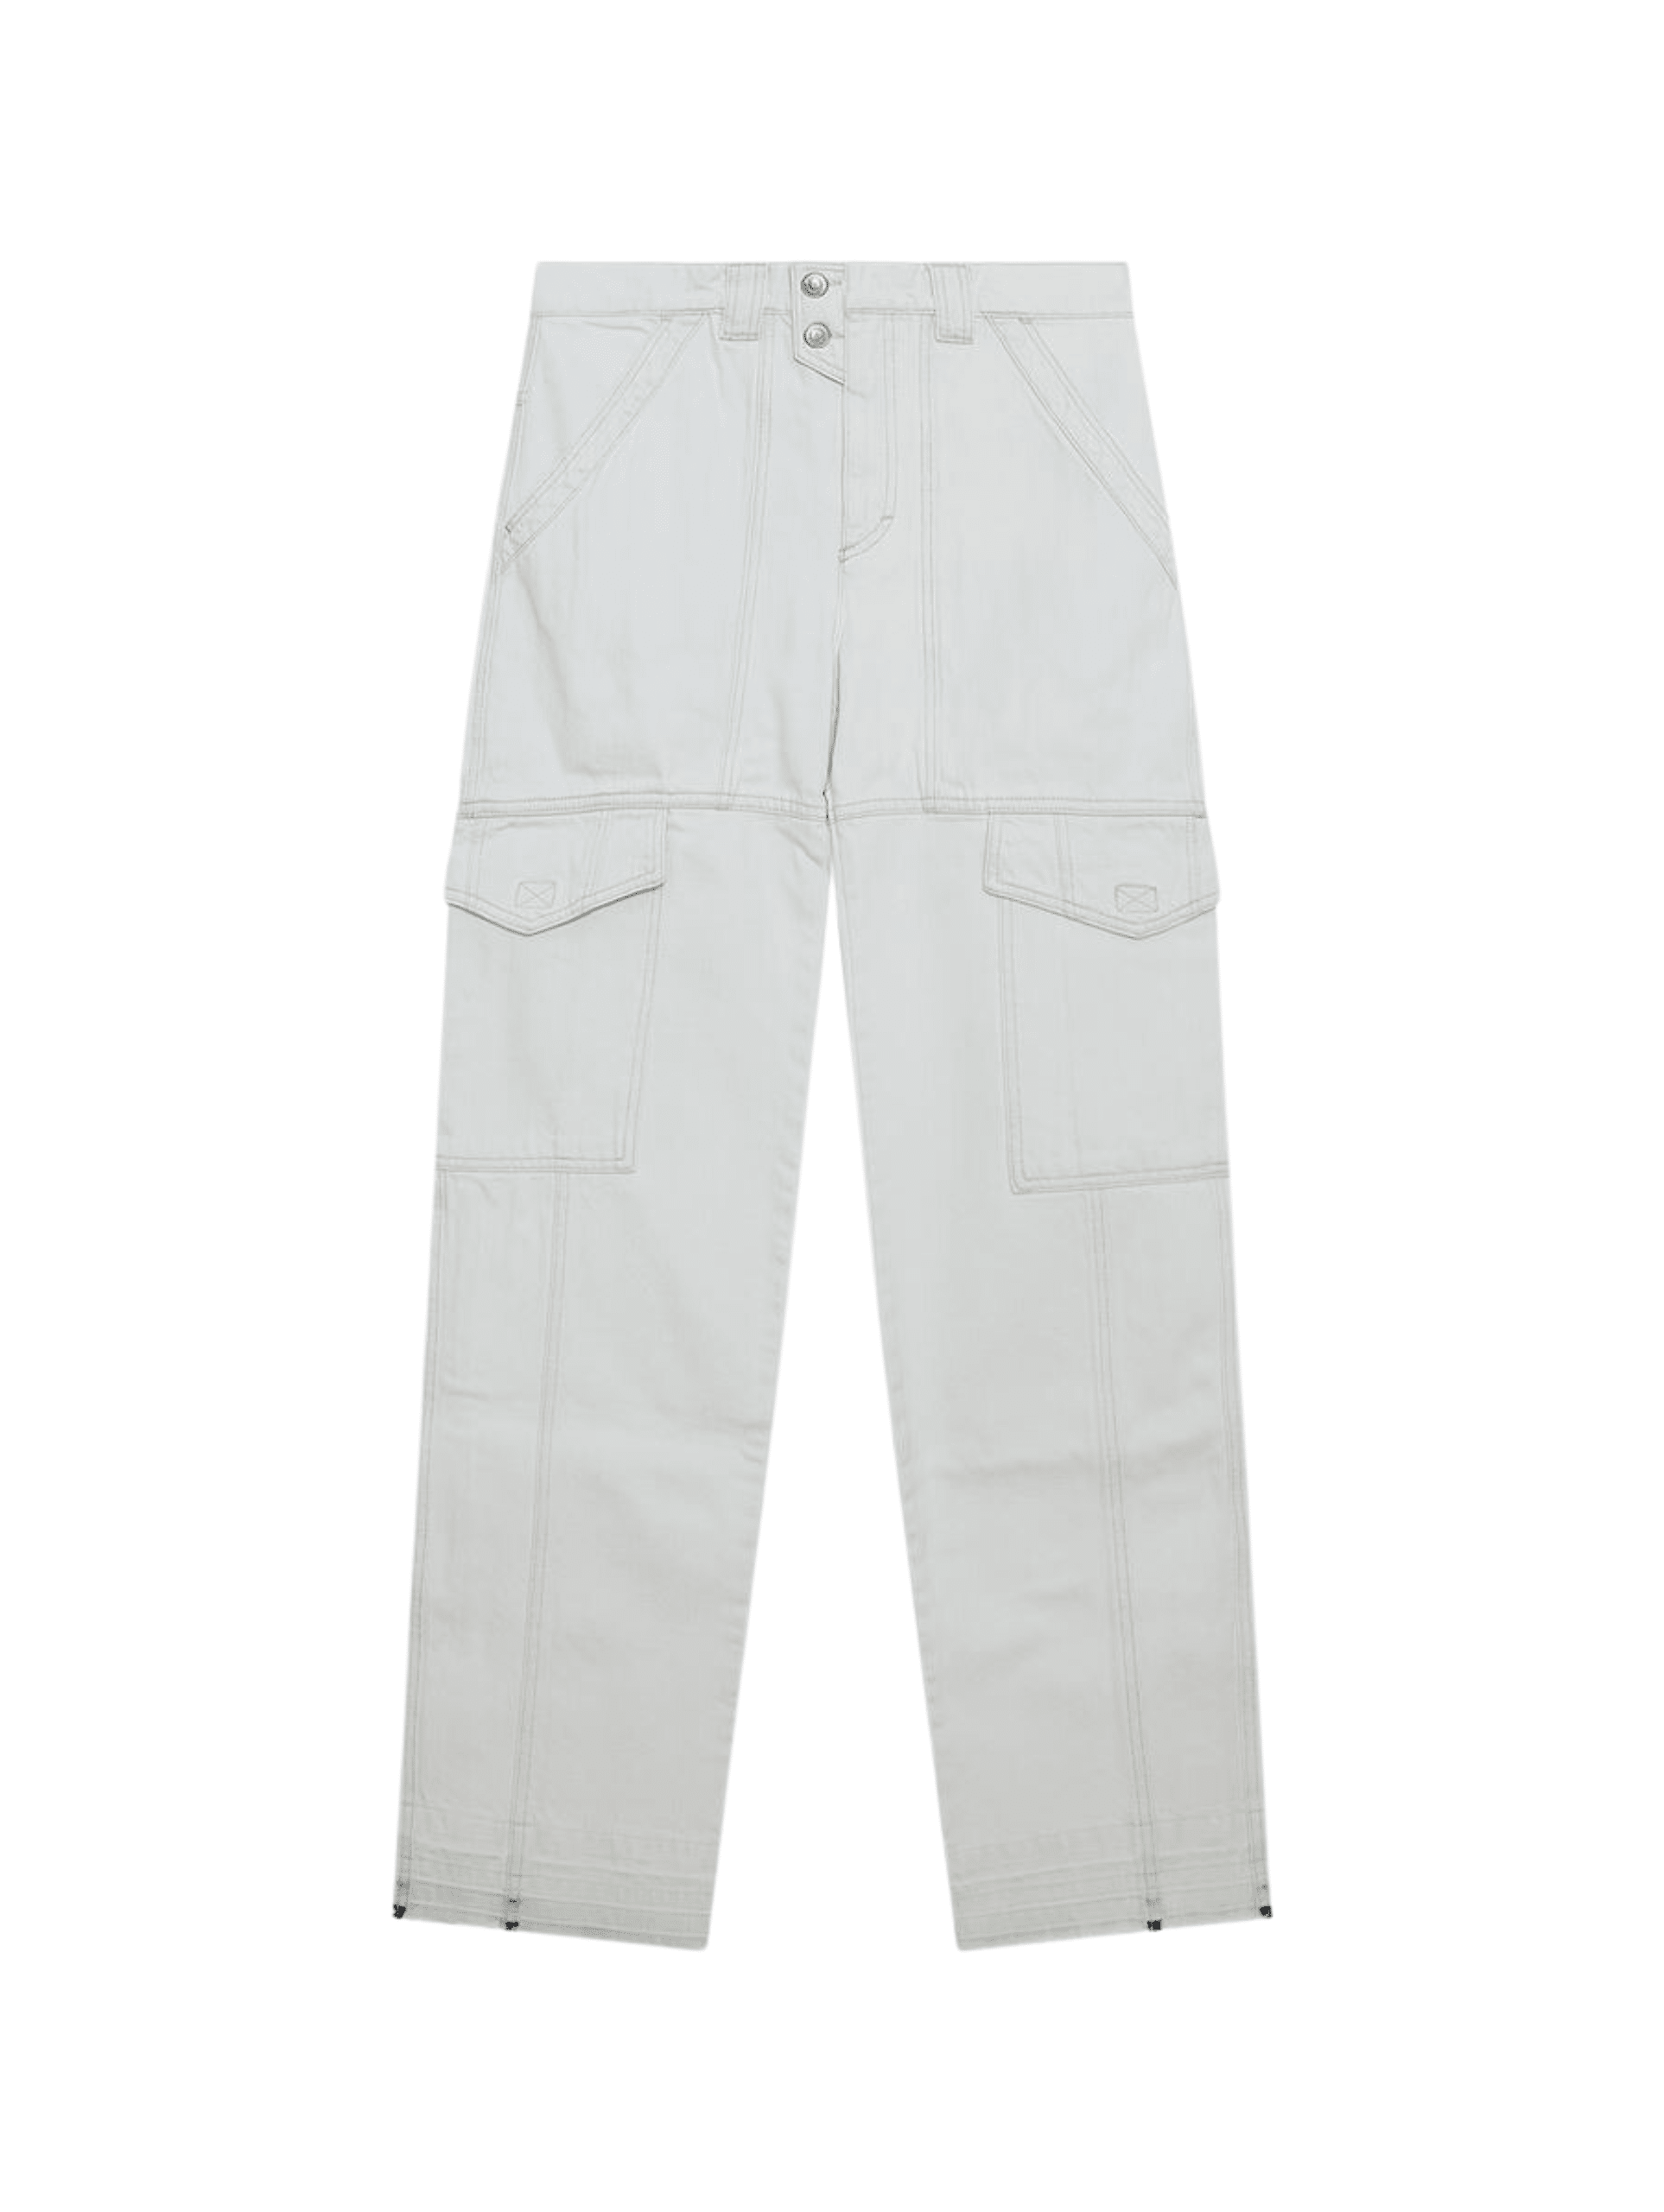 FRANKIE SHOP Bea Stripe Suit Pants / Light Blue & White - Seletti Concept  Store